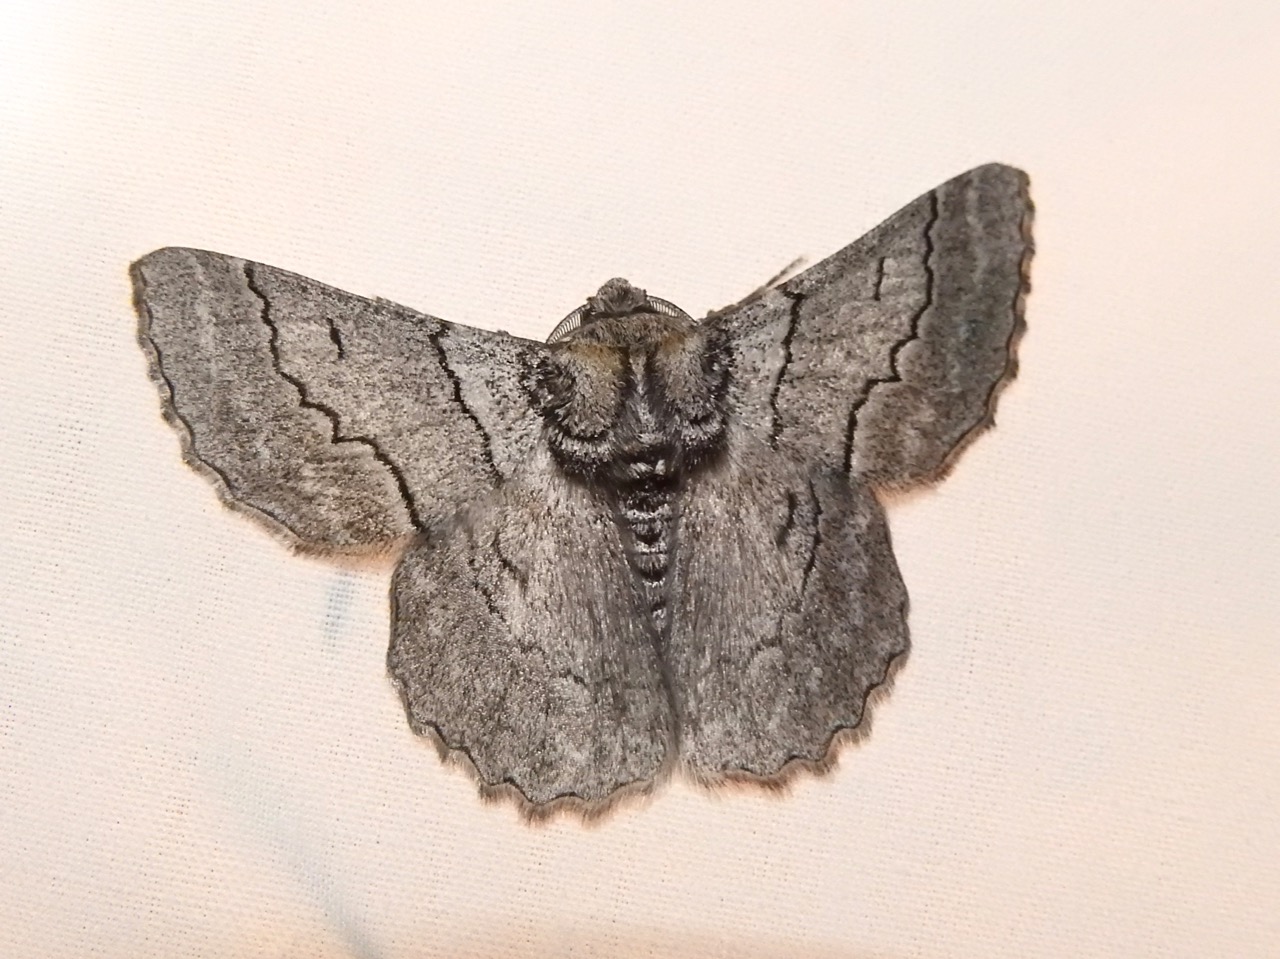 Strathbogie Forest Moth Night